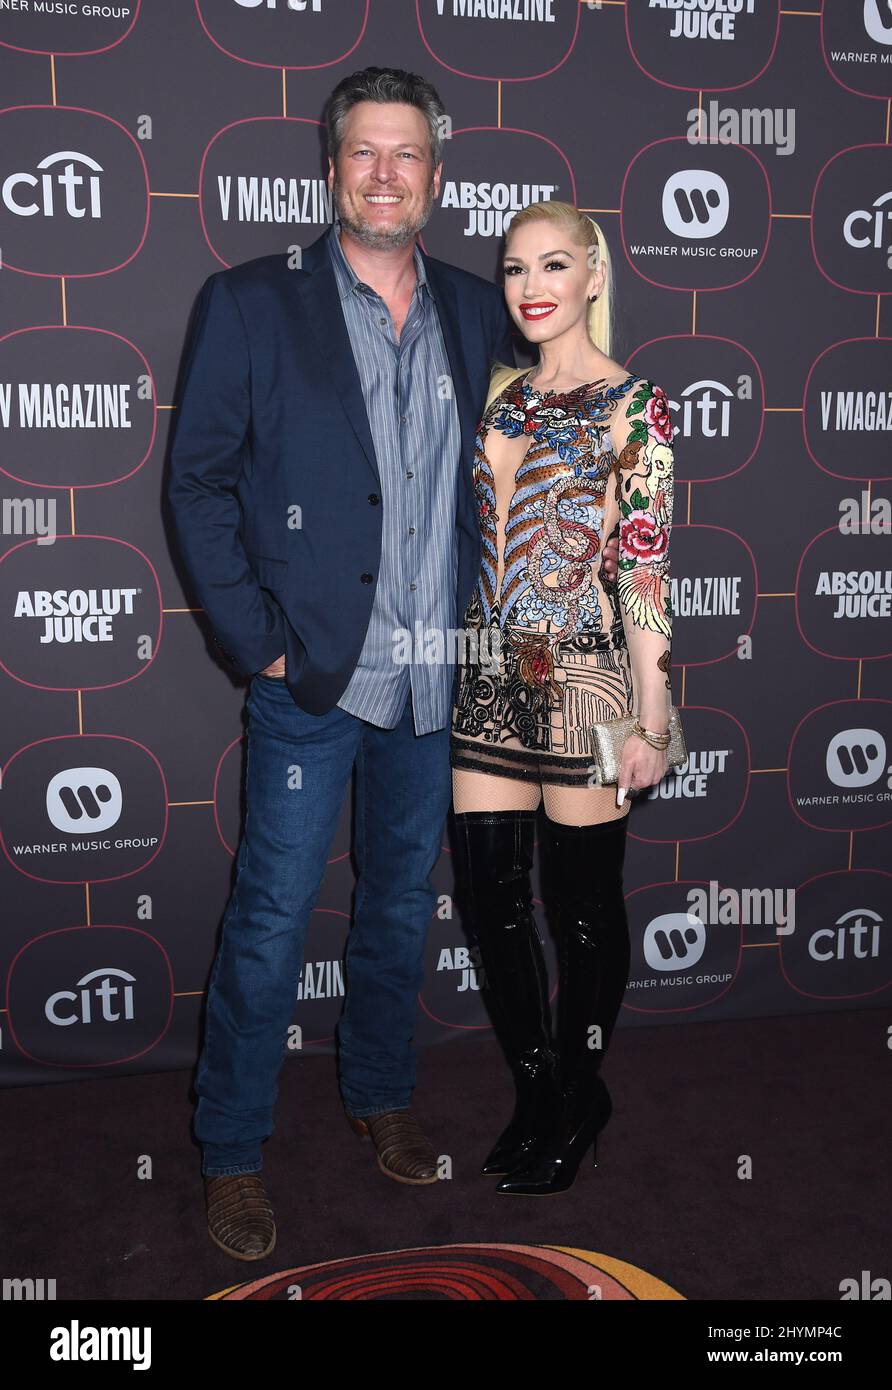 Blake Shelton e Gwen Stefani al Warner Music Group Pre-Grammy Party tenutosi presso l'Hollywood Athletic Club il 23 gennaio 2020 a Hollywood, Los Angeles. Foto Stock